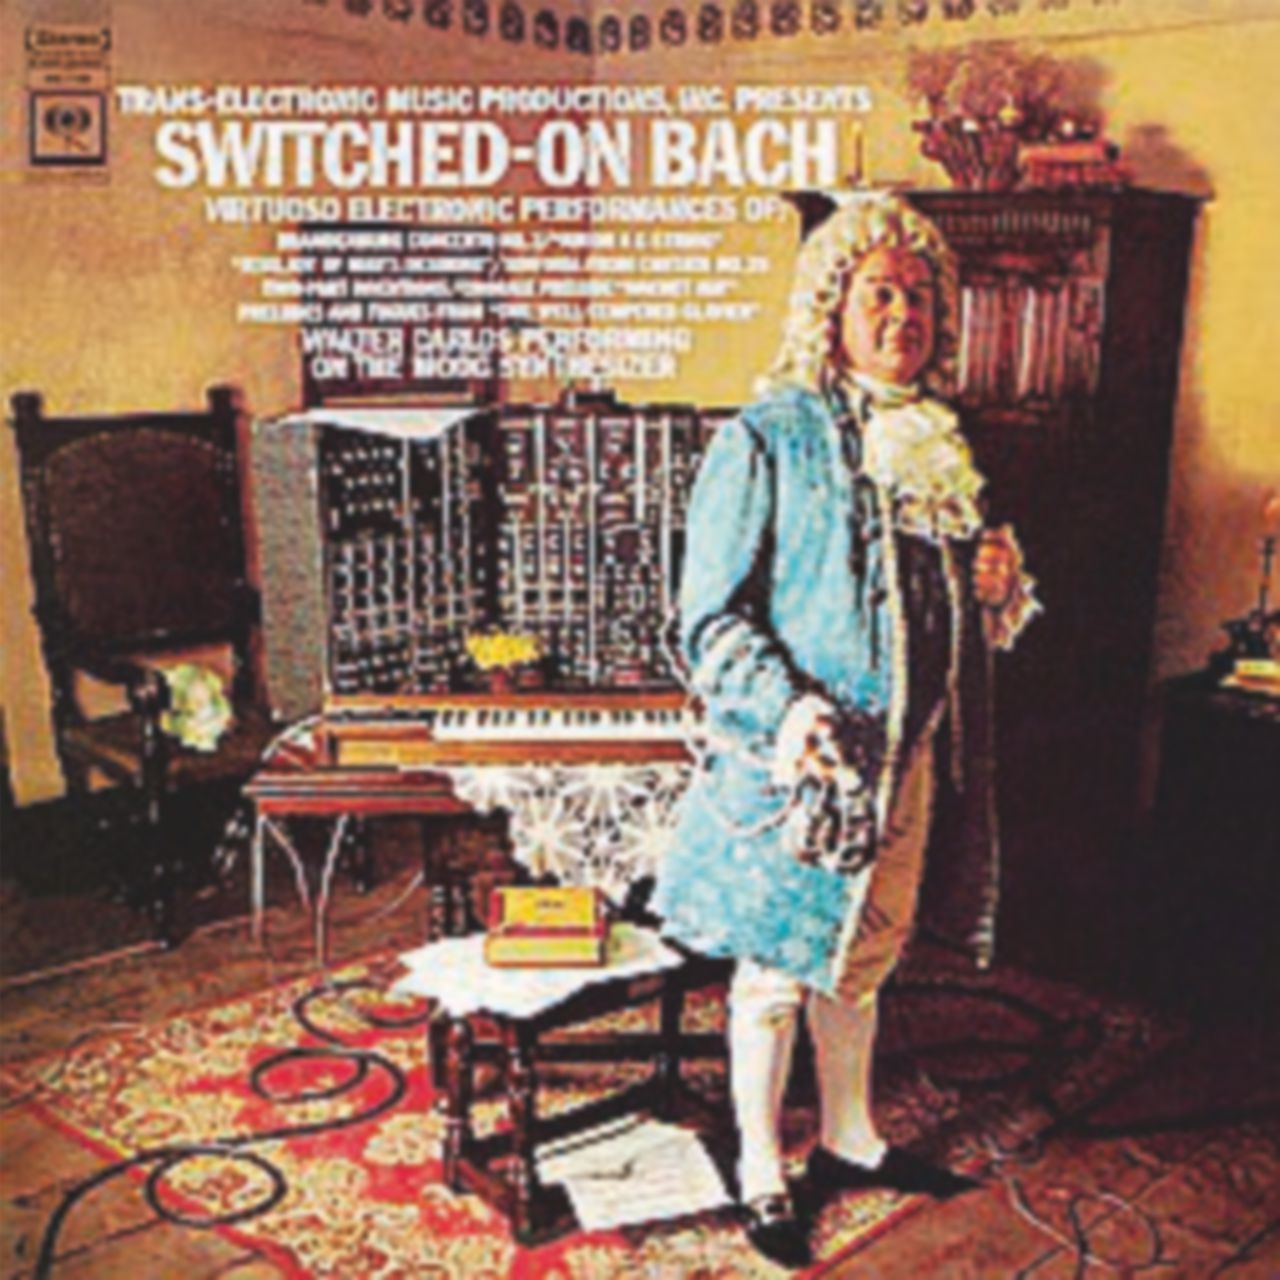 Copertina di “Switched-On Bach”, poteva la classica rimanerne fuori?